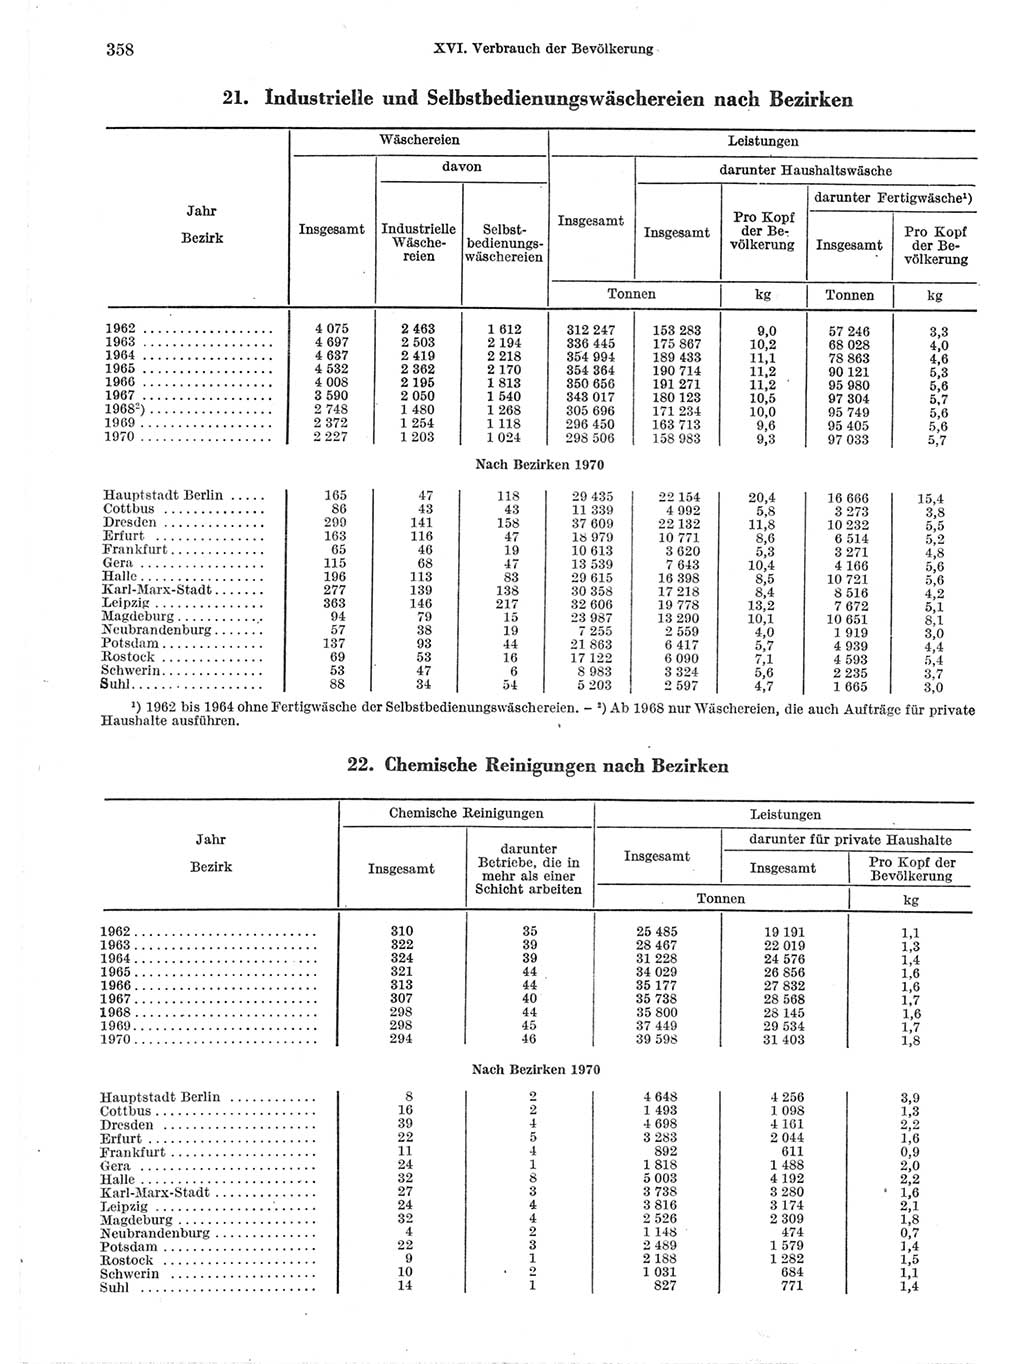 Statistisches Jahrbuch der Deutschen Demokratischen Republik (DDR) 1971, Seite 358 (Stat. Jb. DDR 1971, S. 358)